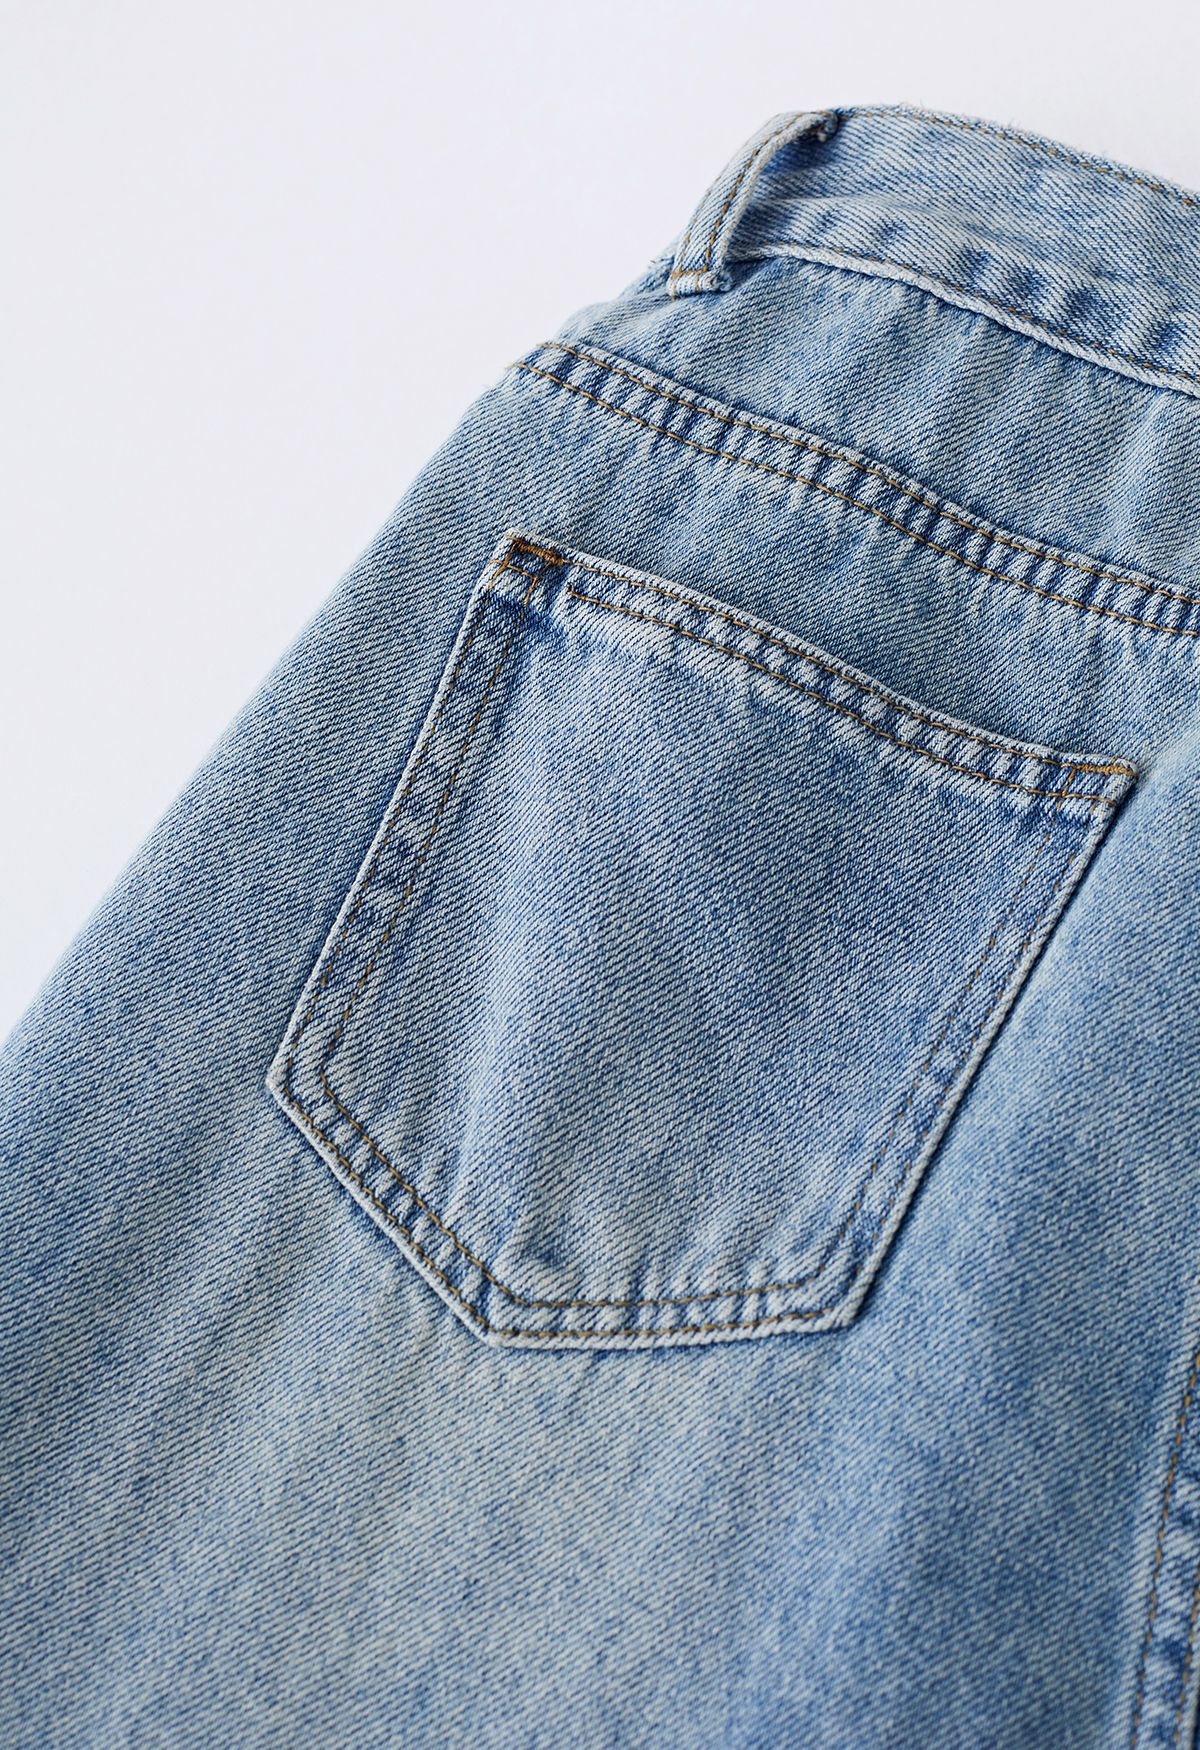 Distressed-Jeans mit geradem Bein und Gürtel in Blau